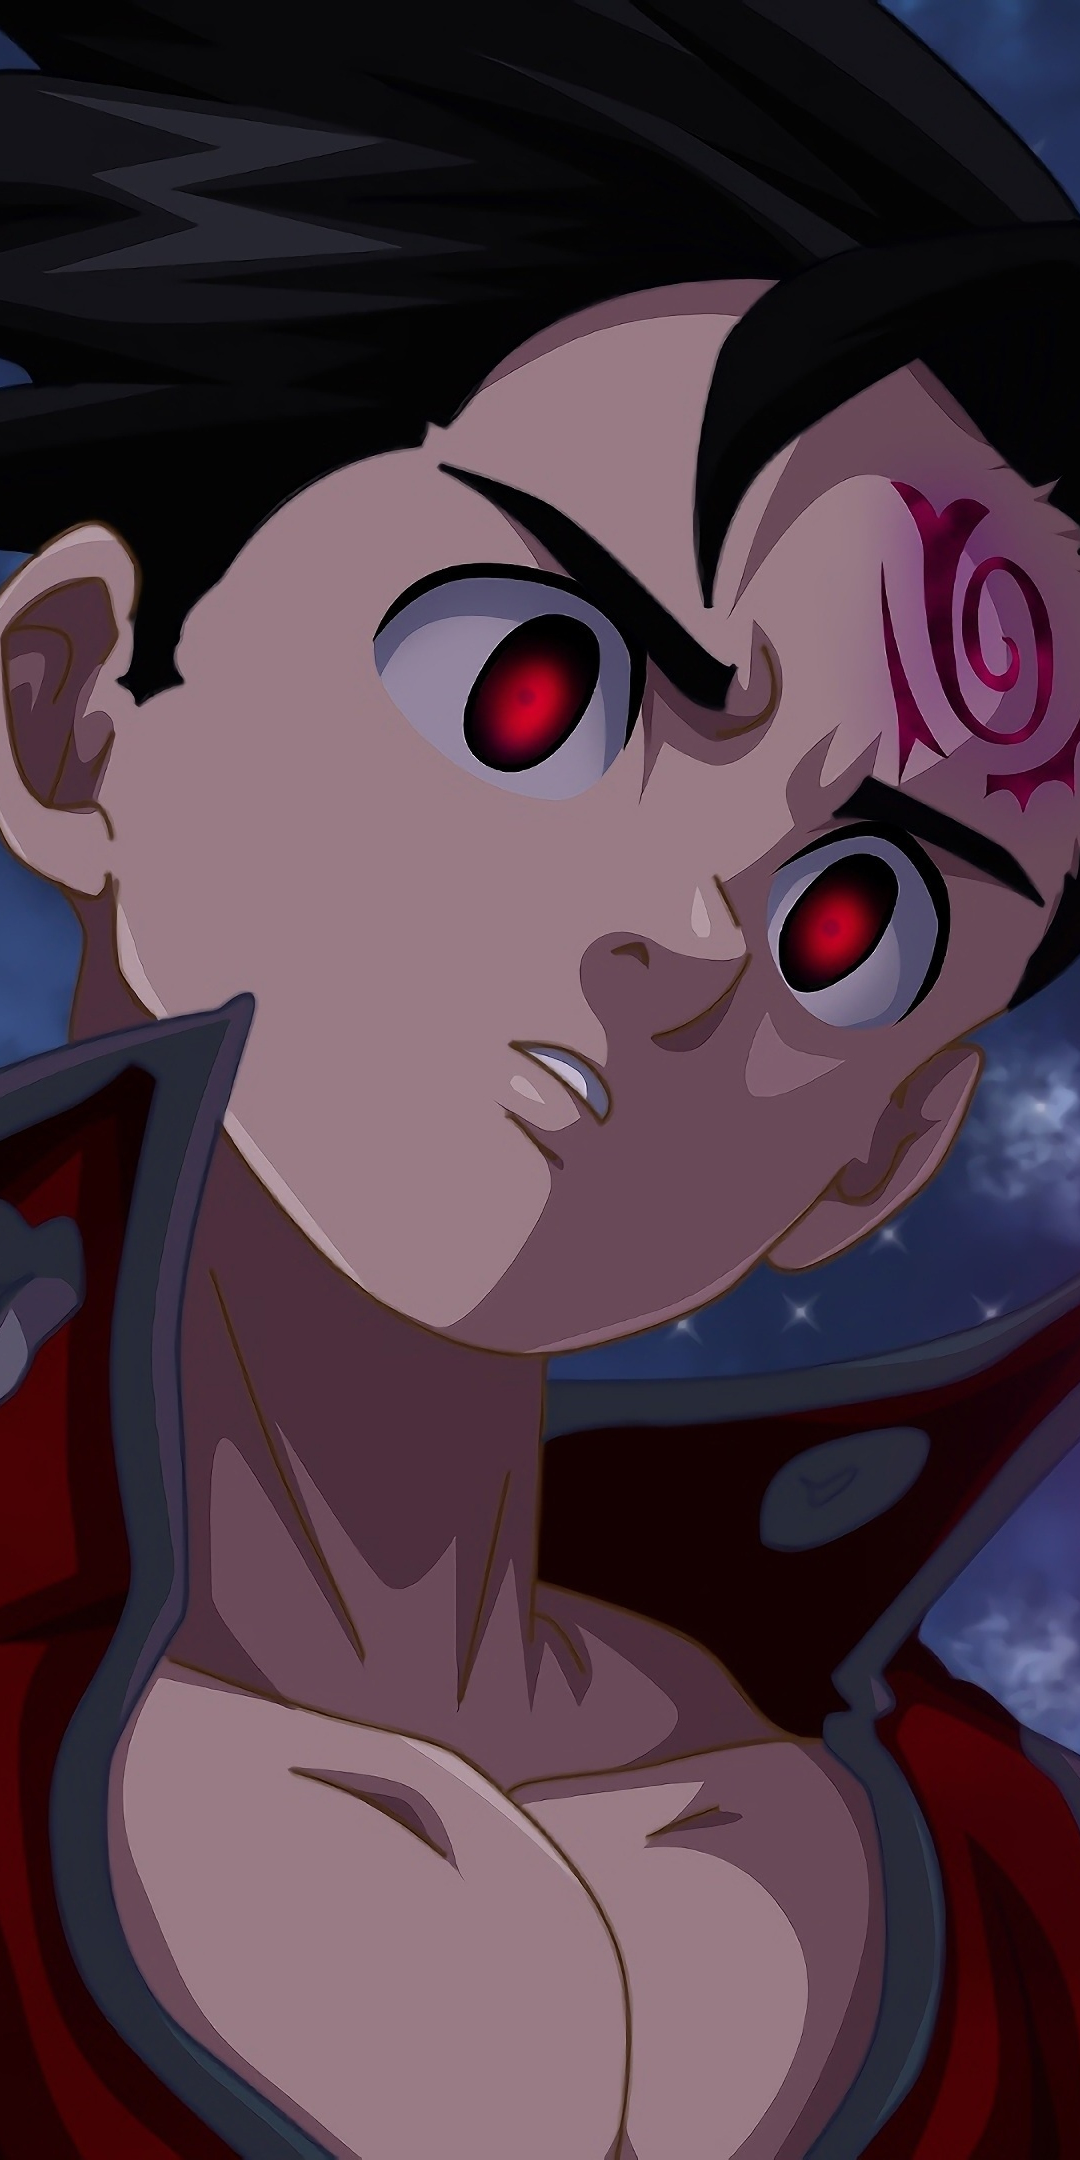 Anime boy, zeldris, the seven deadly sins, 1080x2160 wallpaper